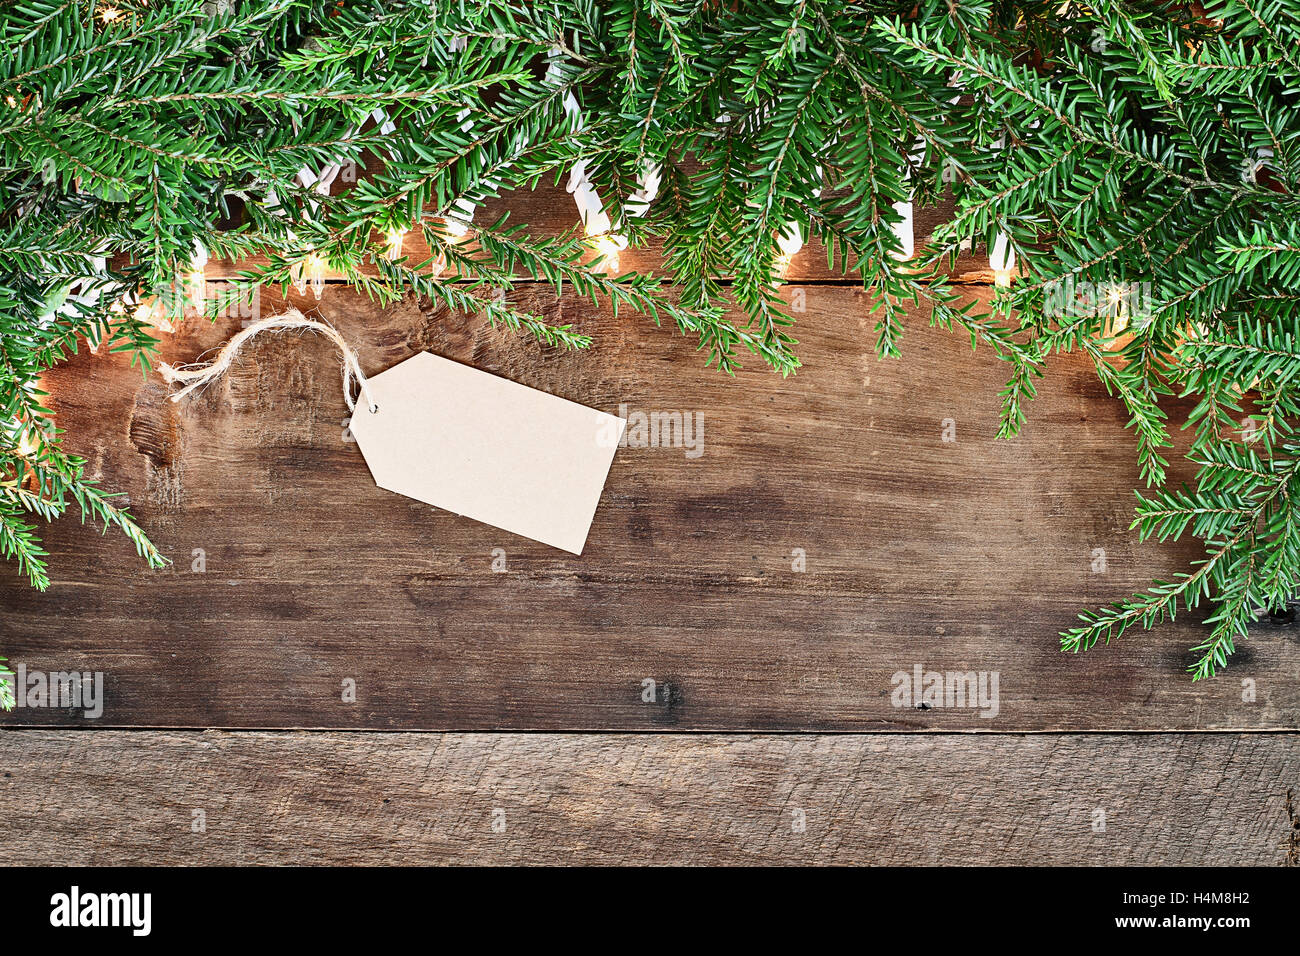 Albero di natale rami di pino, la scheda vuota e luci decorative su un sfondo rustico di legno del granaio. Immagine ripresa dalla testa. Foto Stock